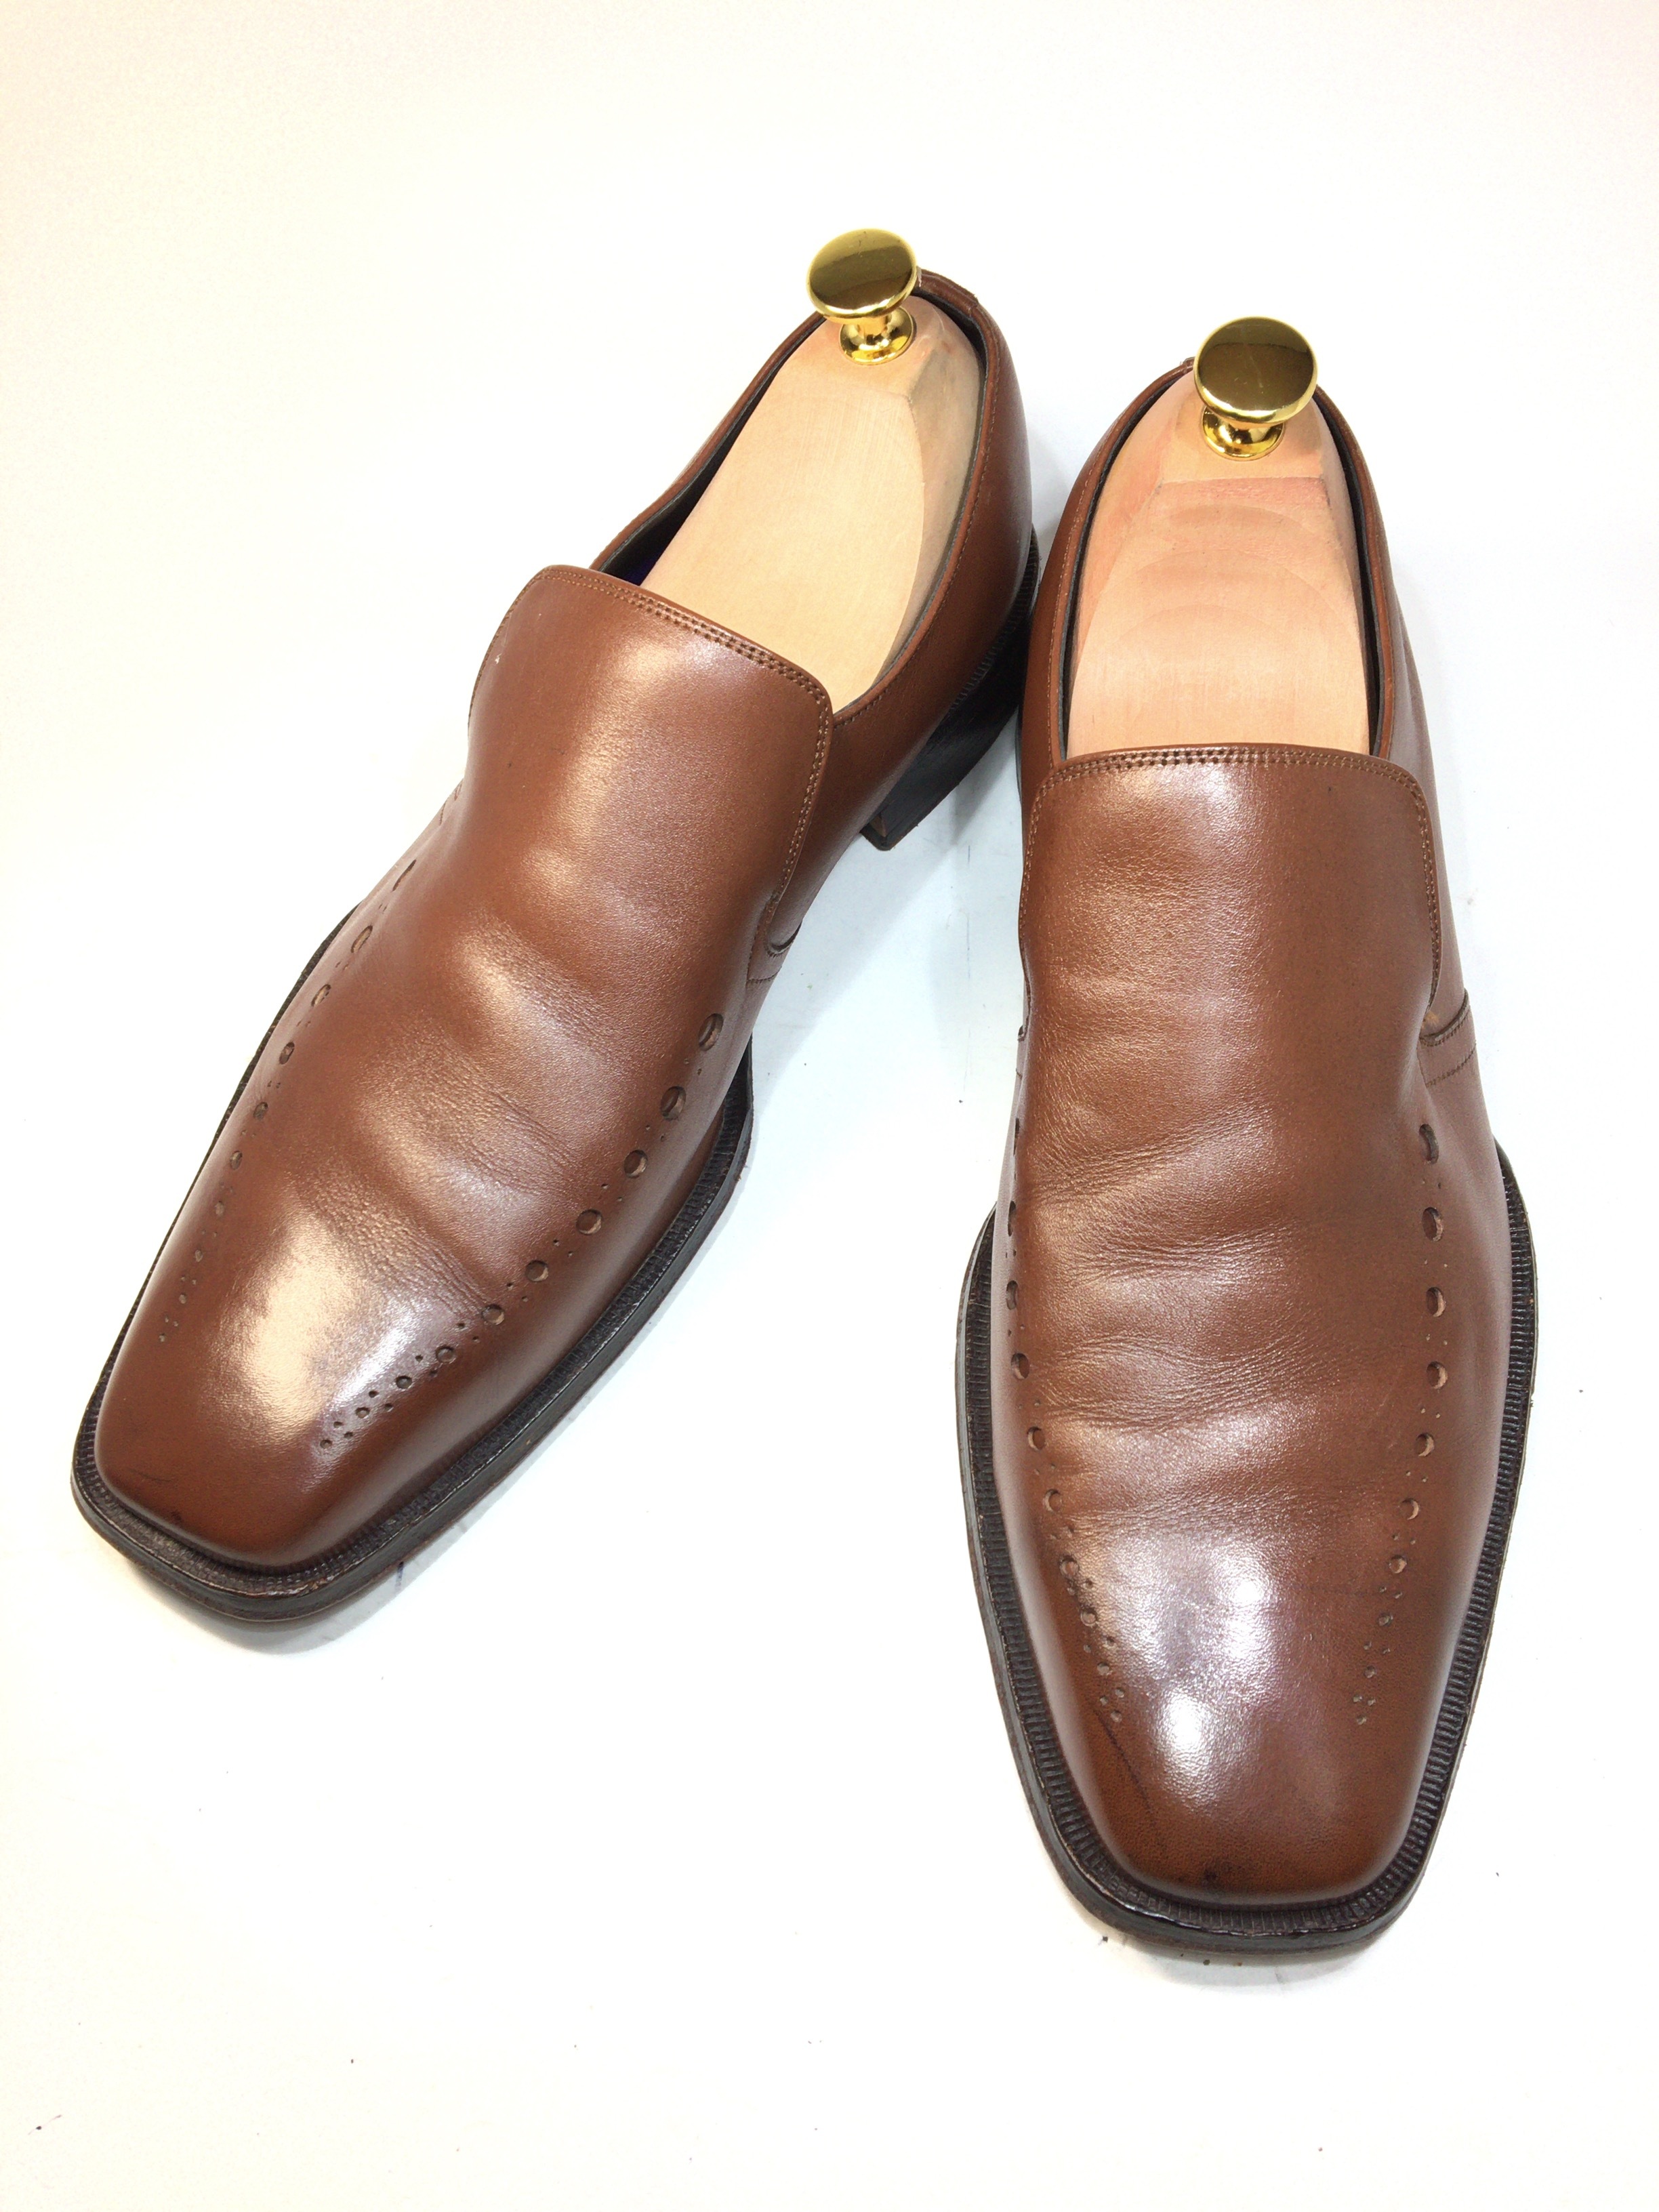 ポールスミス Paulsmith スリッポン 27センチ 中古靴 革靴 ブーツ通販専門店 Dafsmart ダフスマート Online Shop